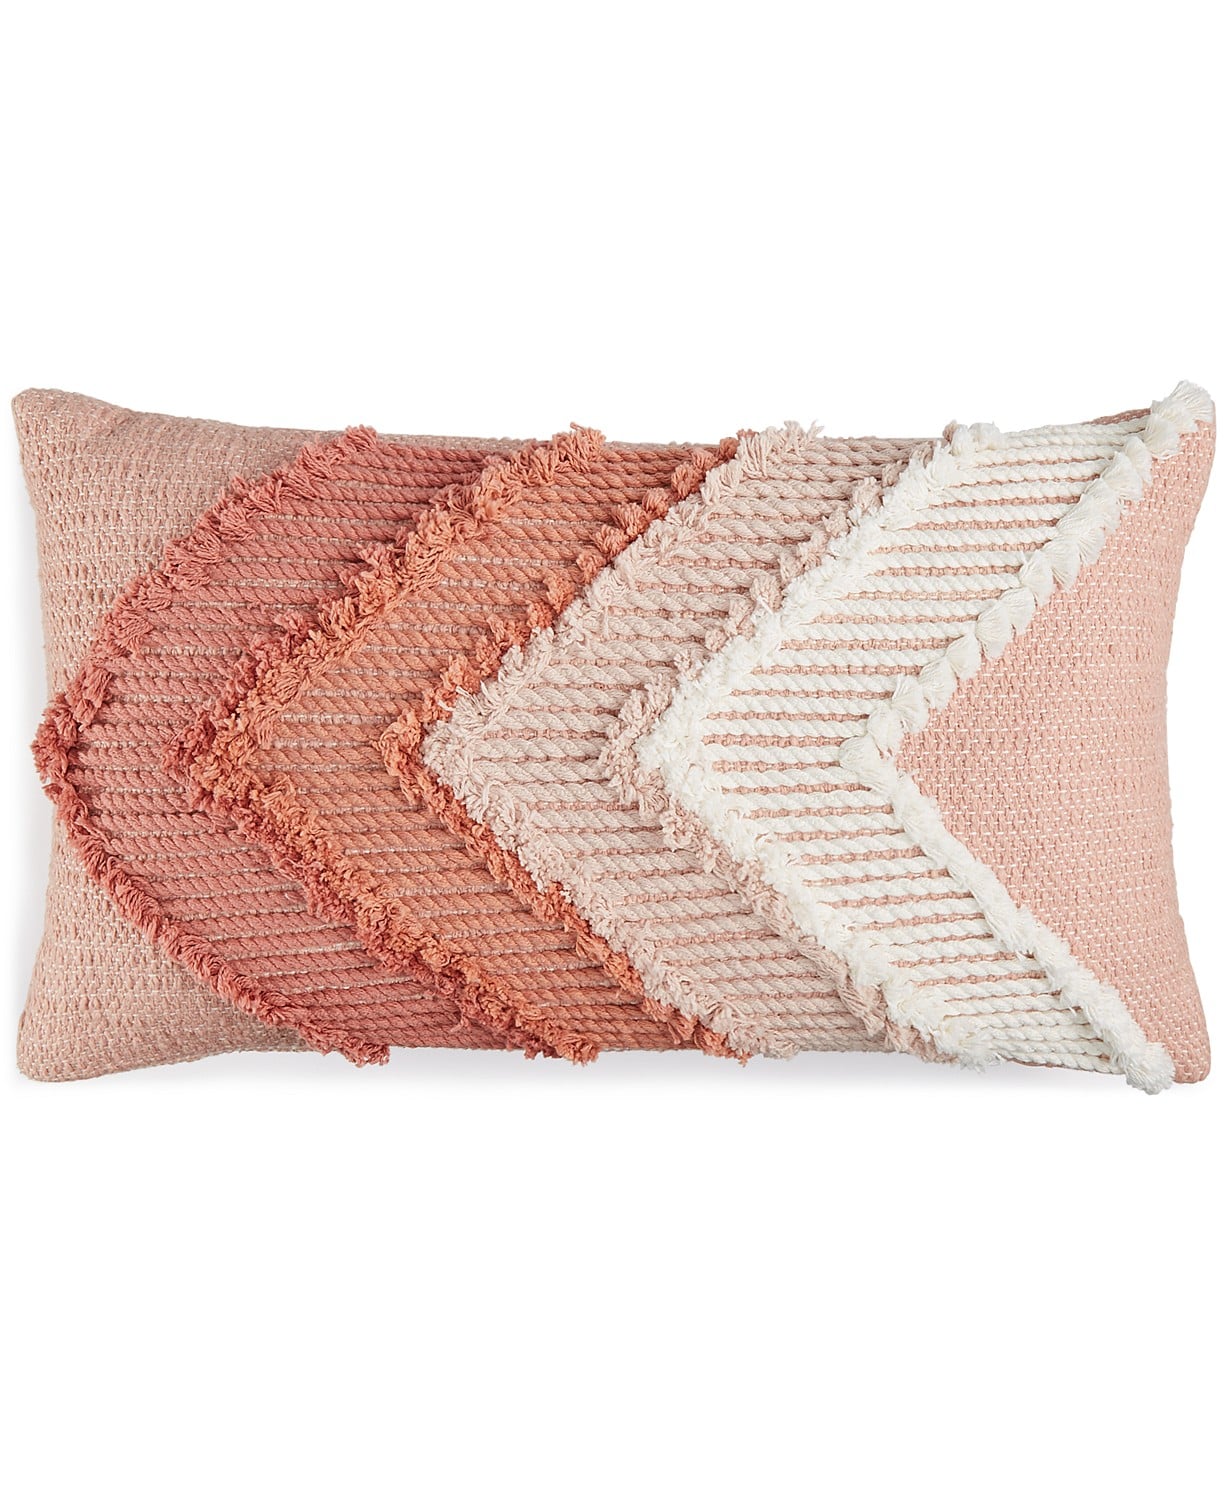 pretty decorative pillows